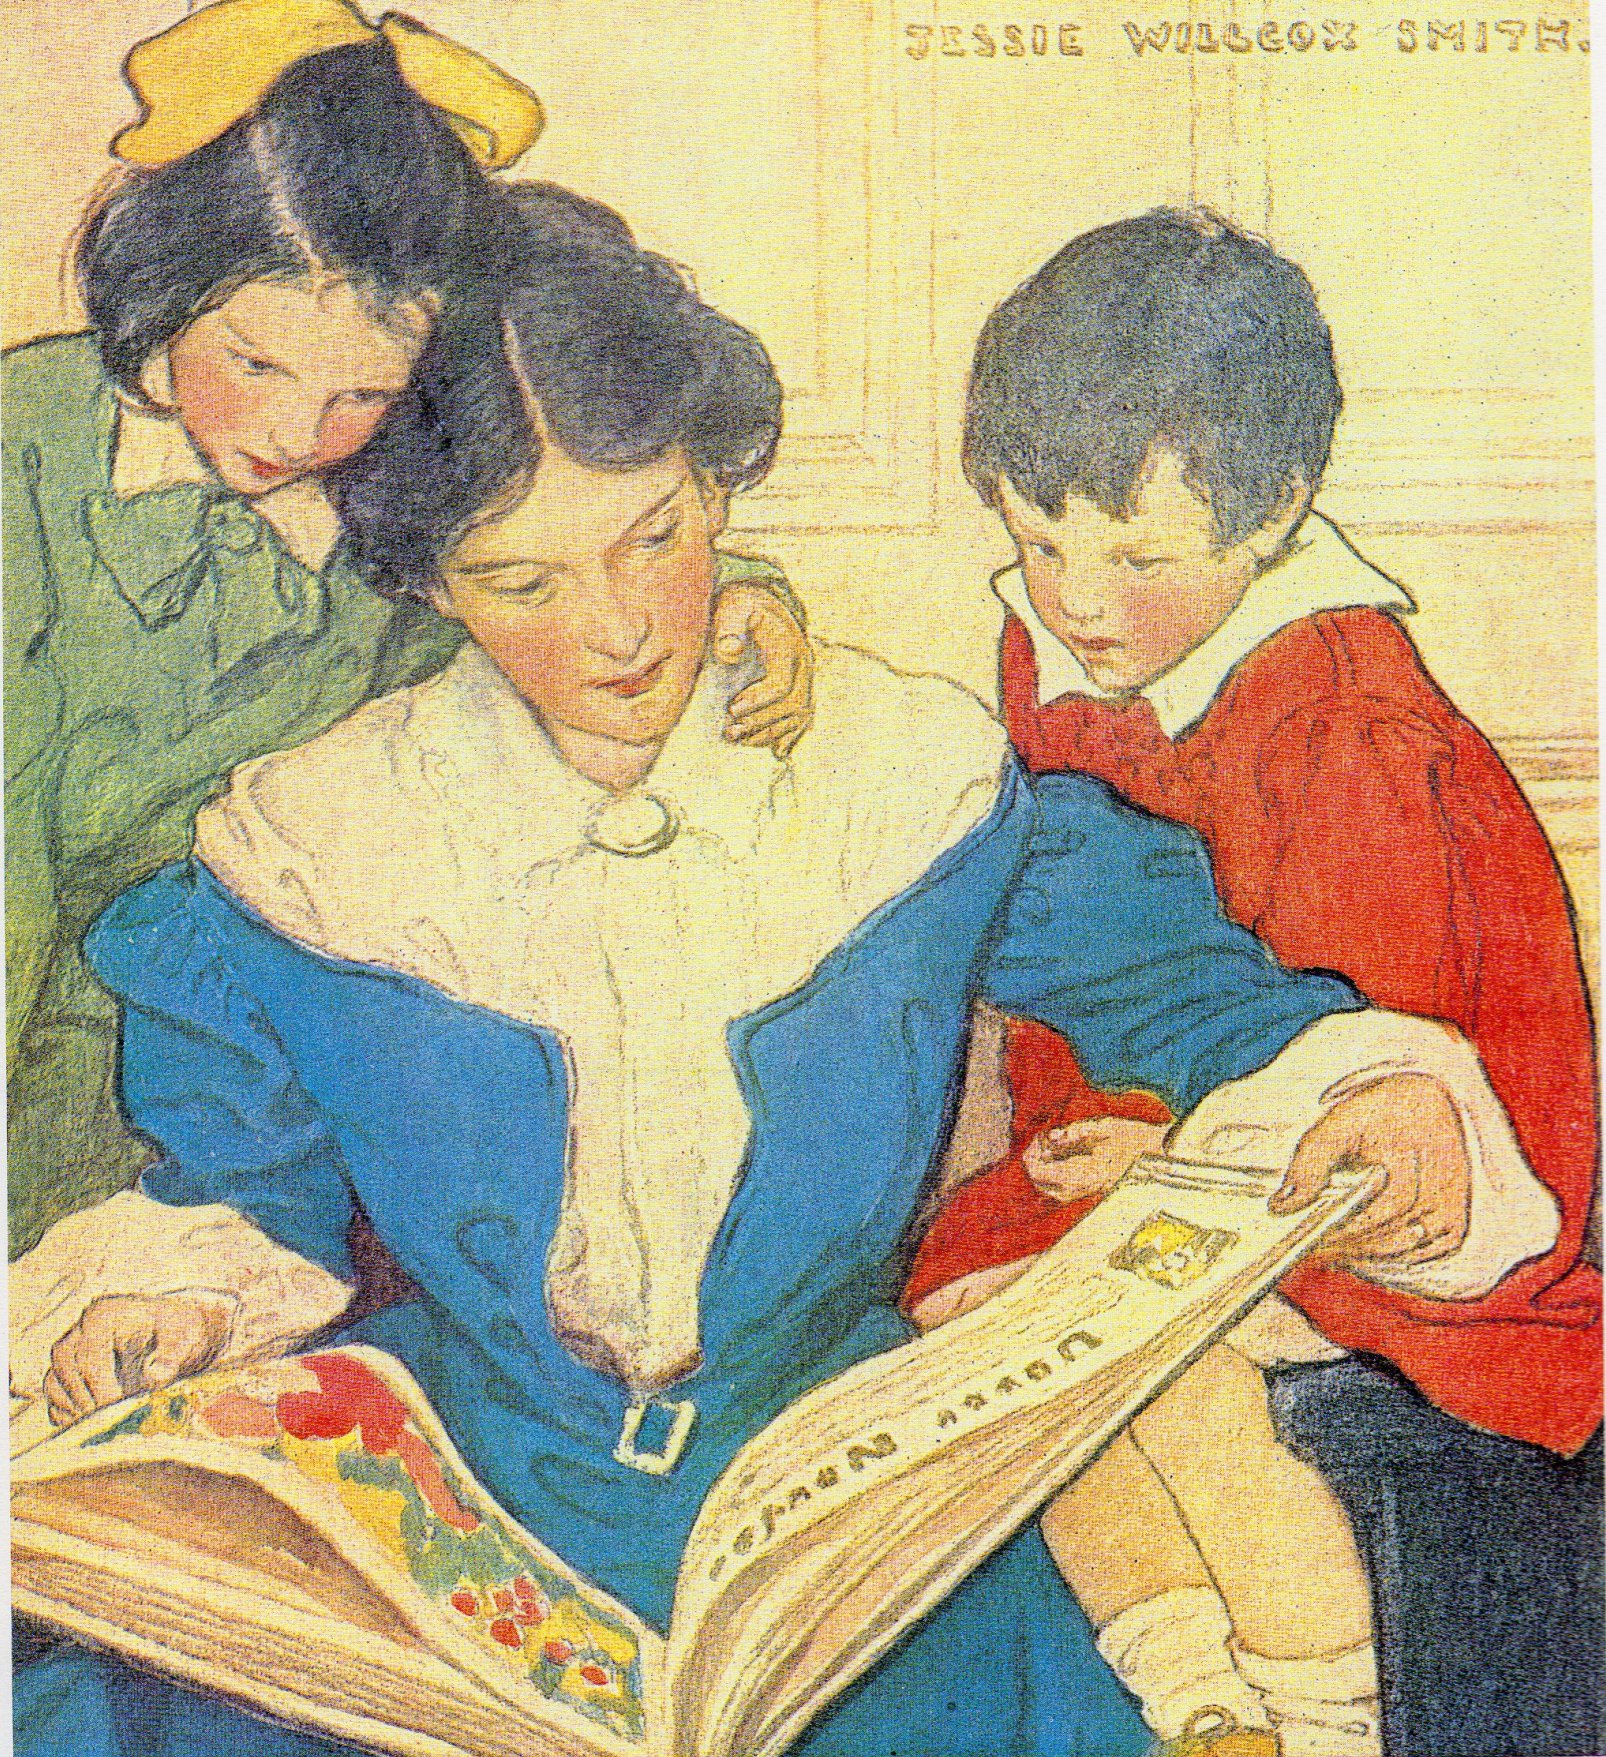 Книги открытки старые. Джесси Уилкокс Смит иллюстрации. Джесси Уилкокс Смит семейное чтение. Джесси Уилкокс Смит американская художница-иллюстратор 1863-1935. Джесси Уилкокс детство.